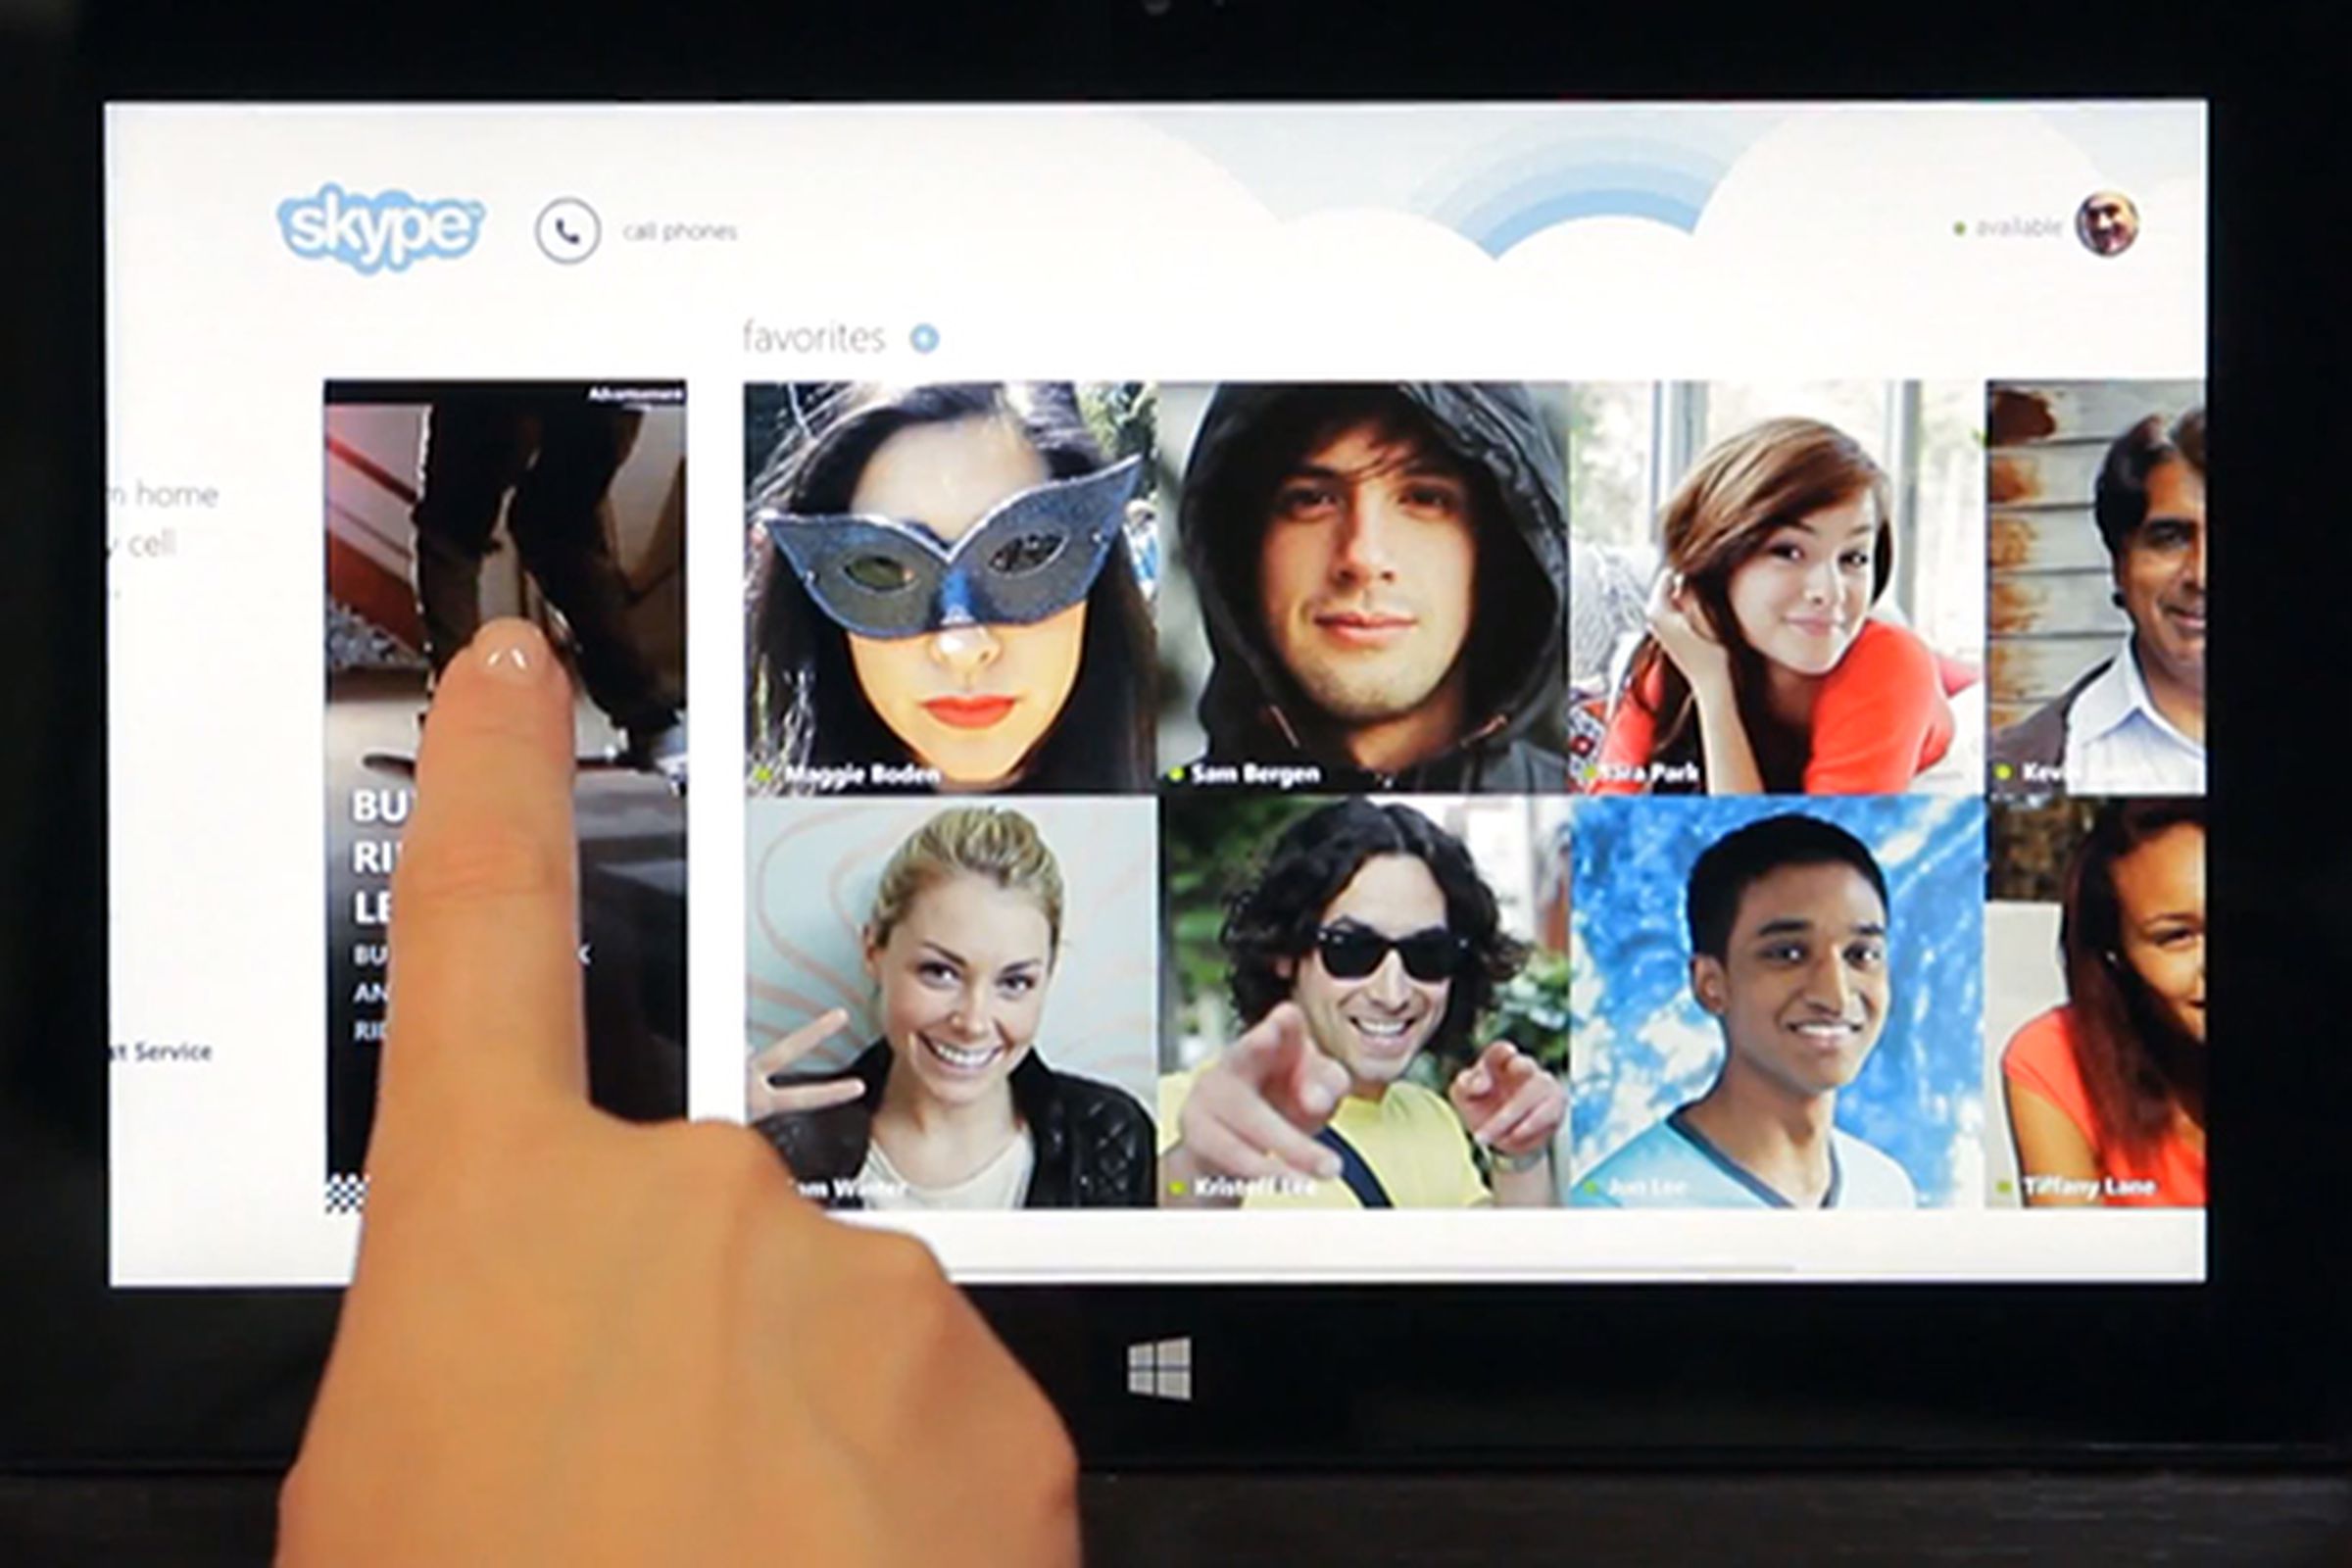 Windows 8 app ads